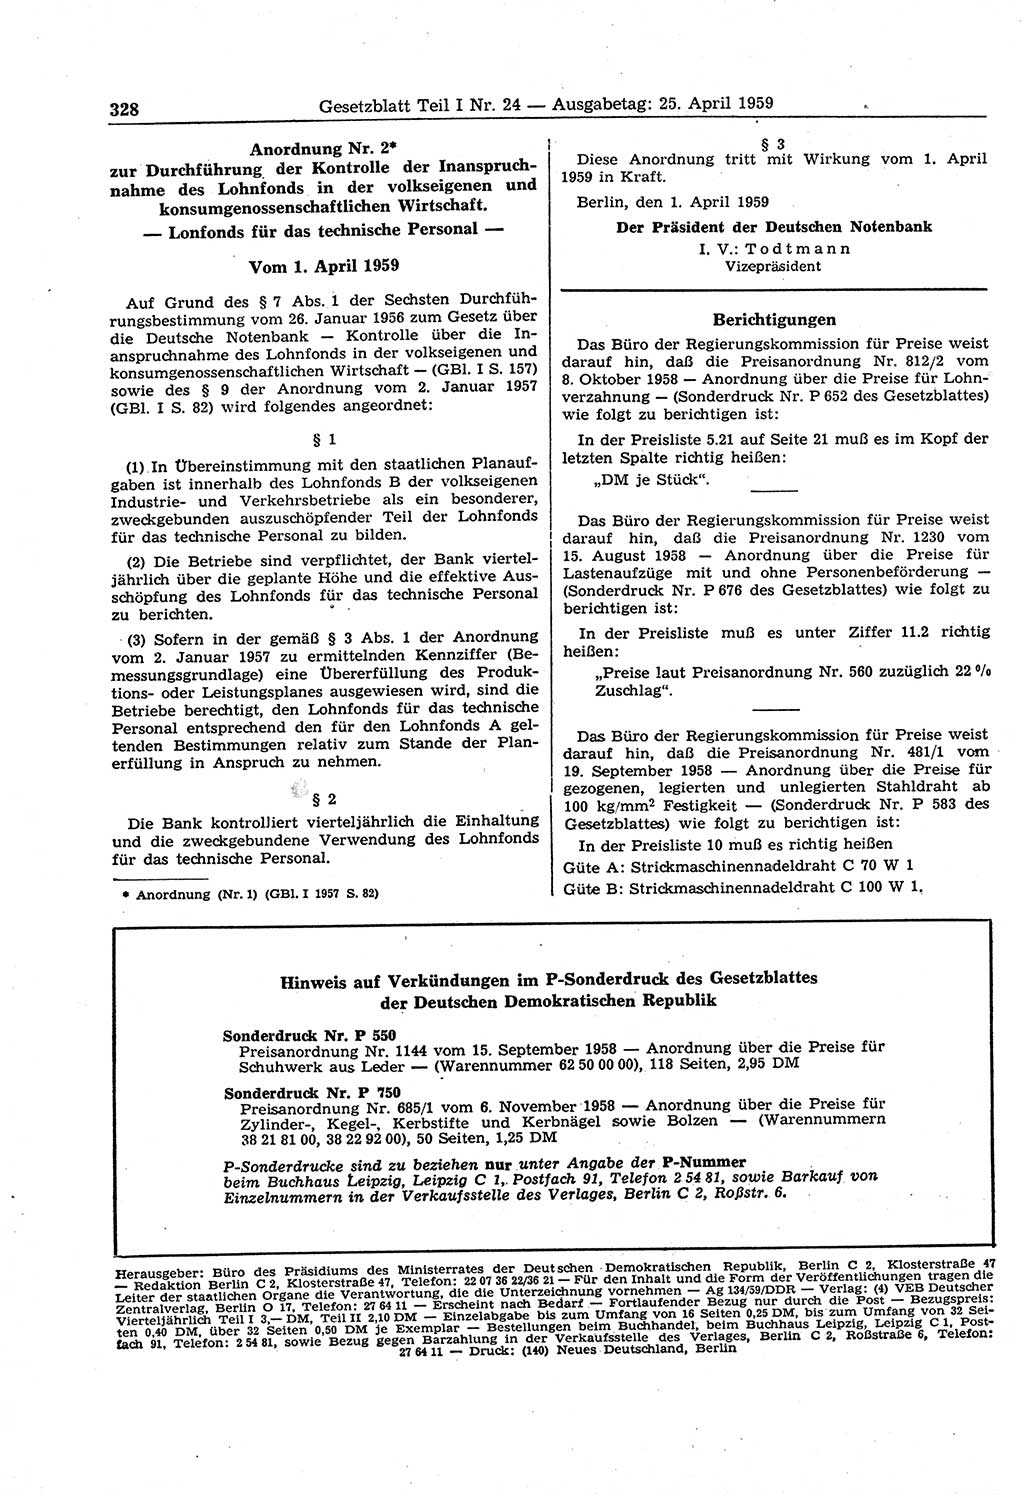 Gesetzblatt (GBl.) der Deutschen Demokratischen Republik (DDR) Teil Ⅰ 1959, Seite 328 (GBl. DDR Ⅰ 1959, S. 328)